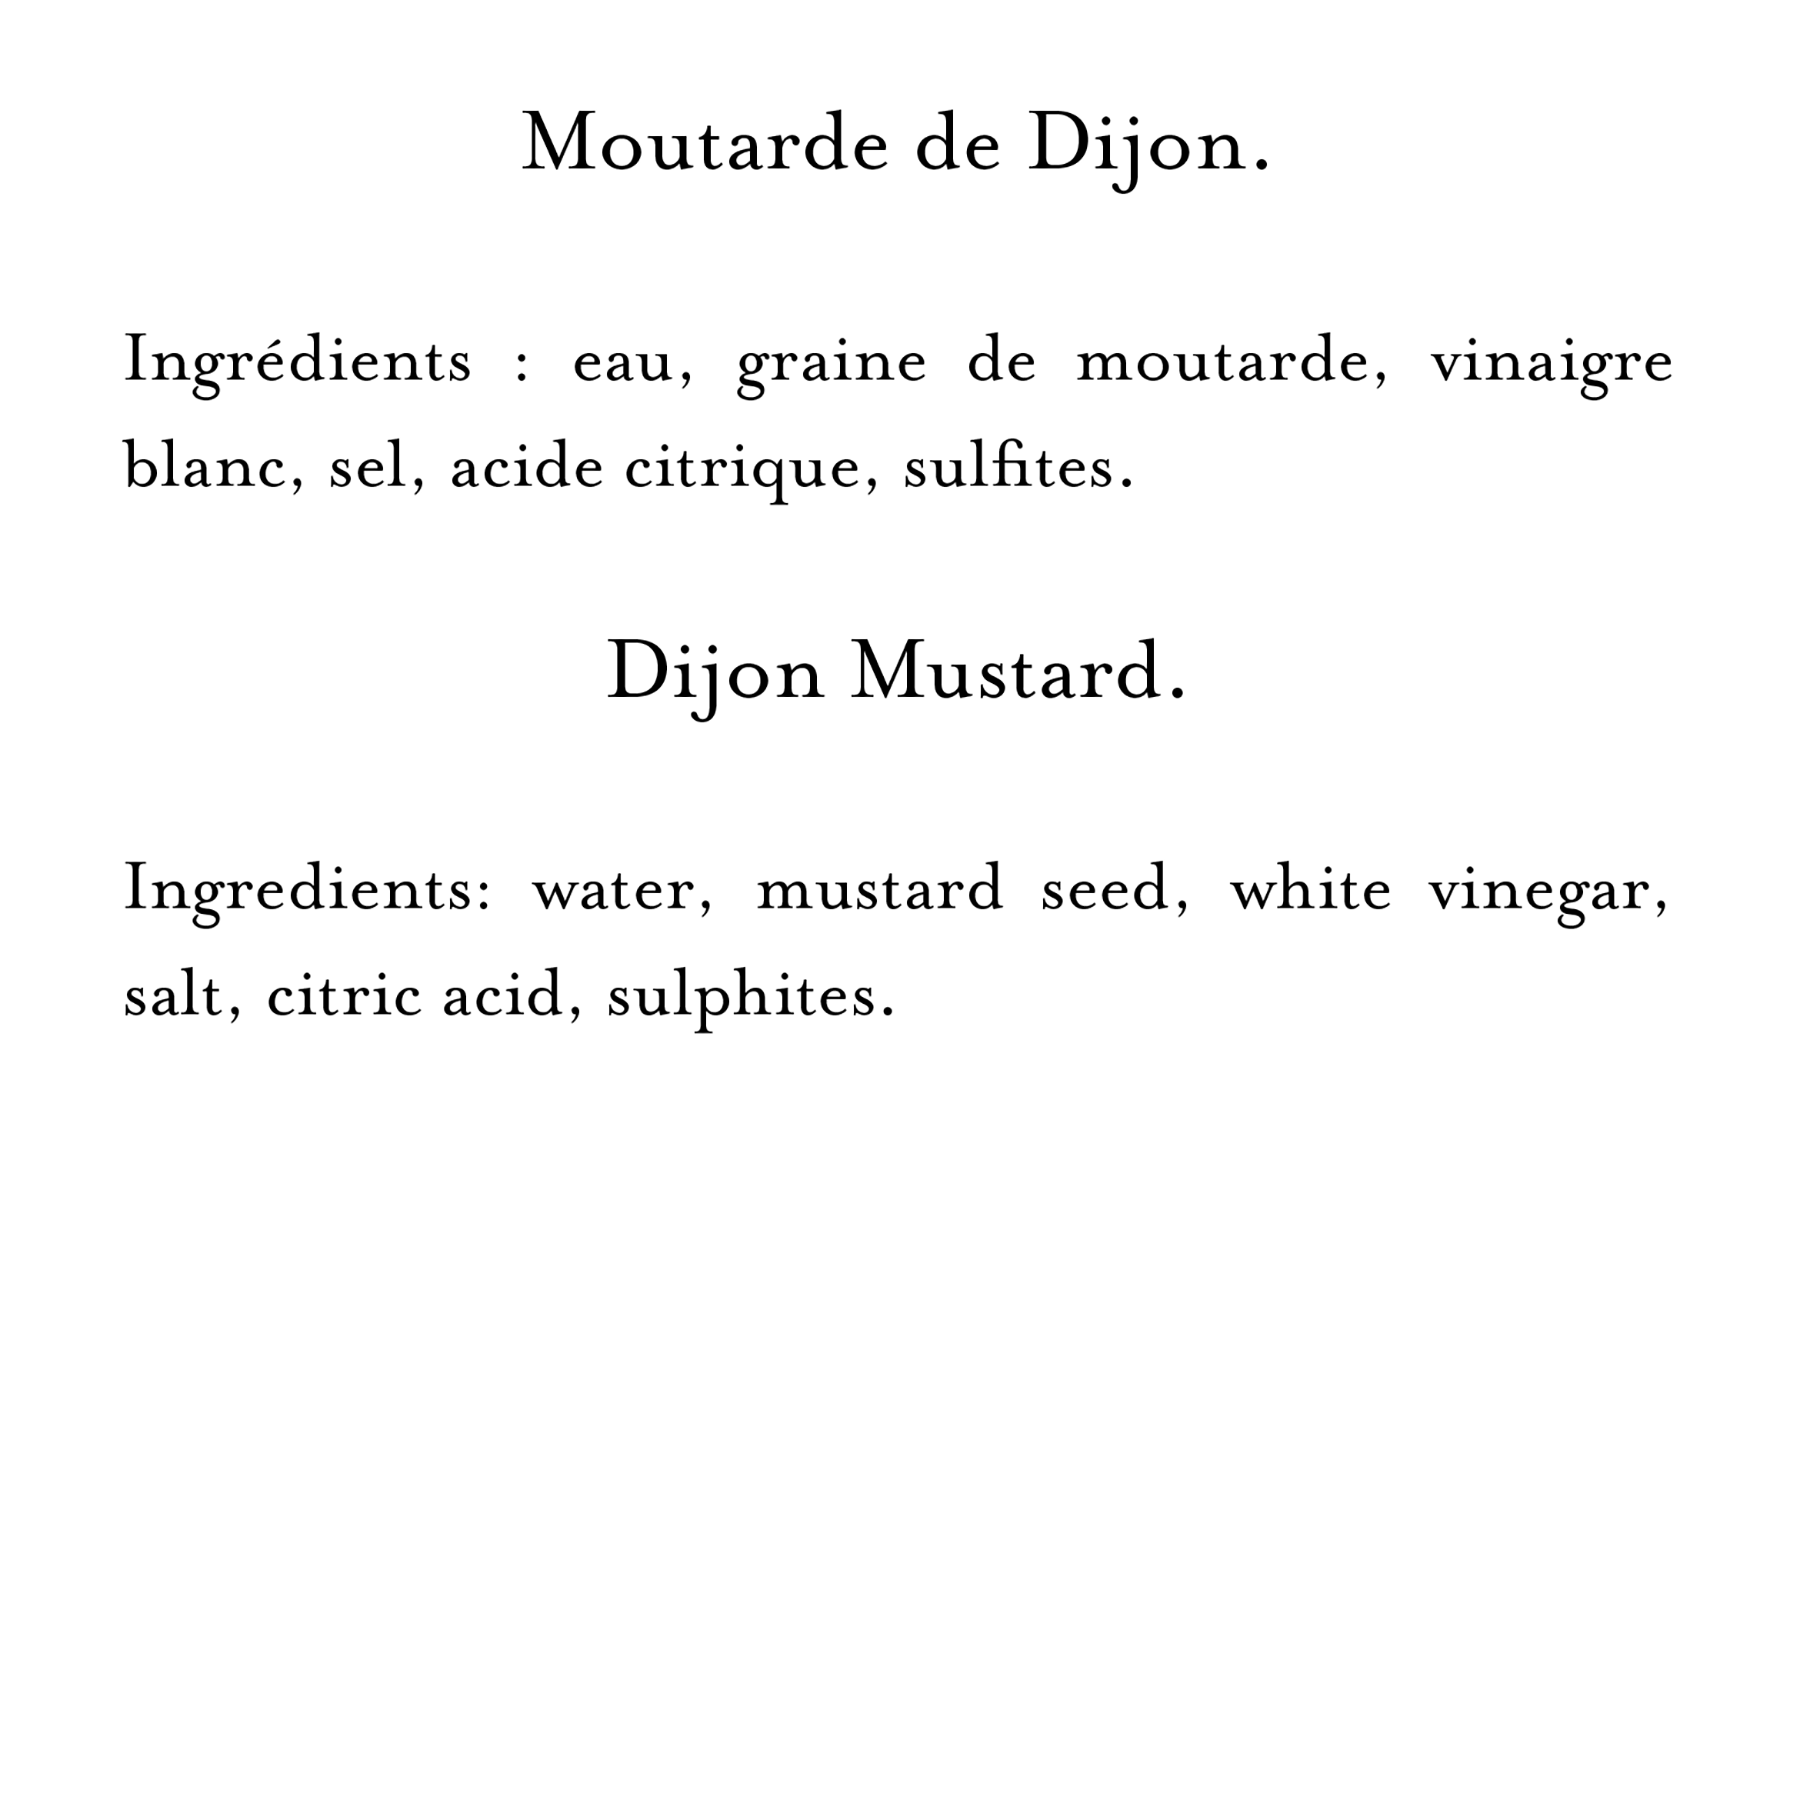 Ingredients (19)